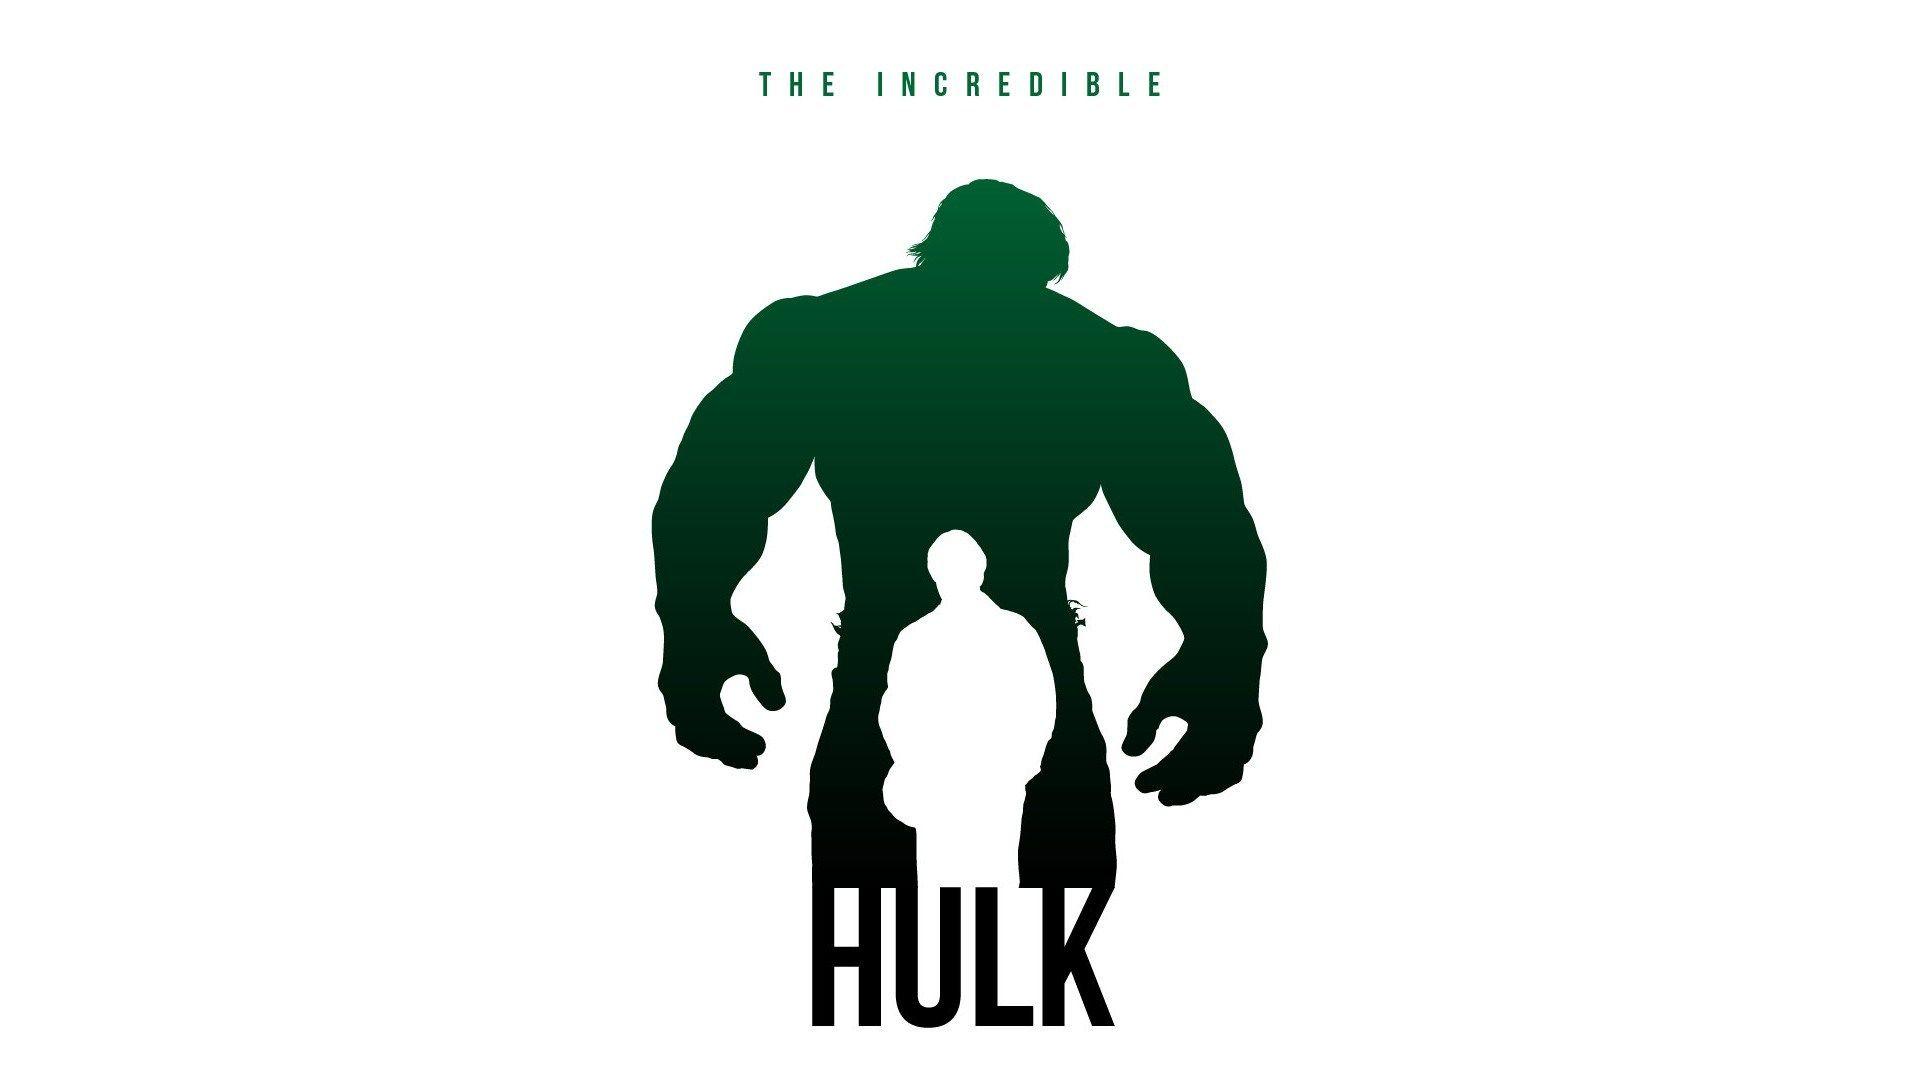 Wallpaper For > Incredible Hulk iPhone Wallpaper